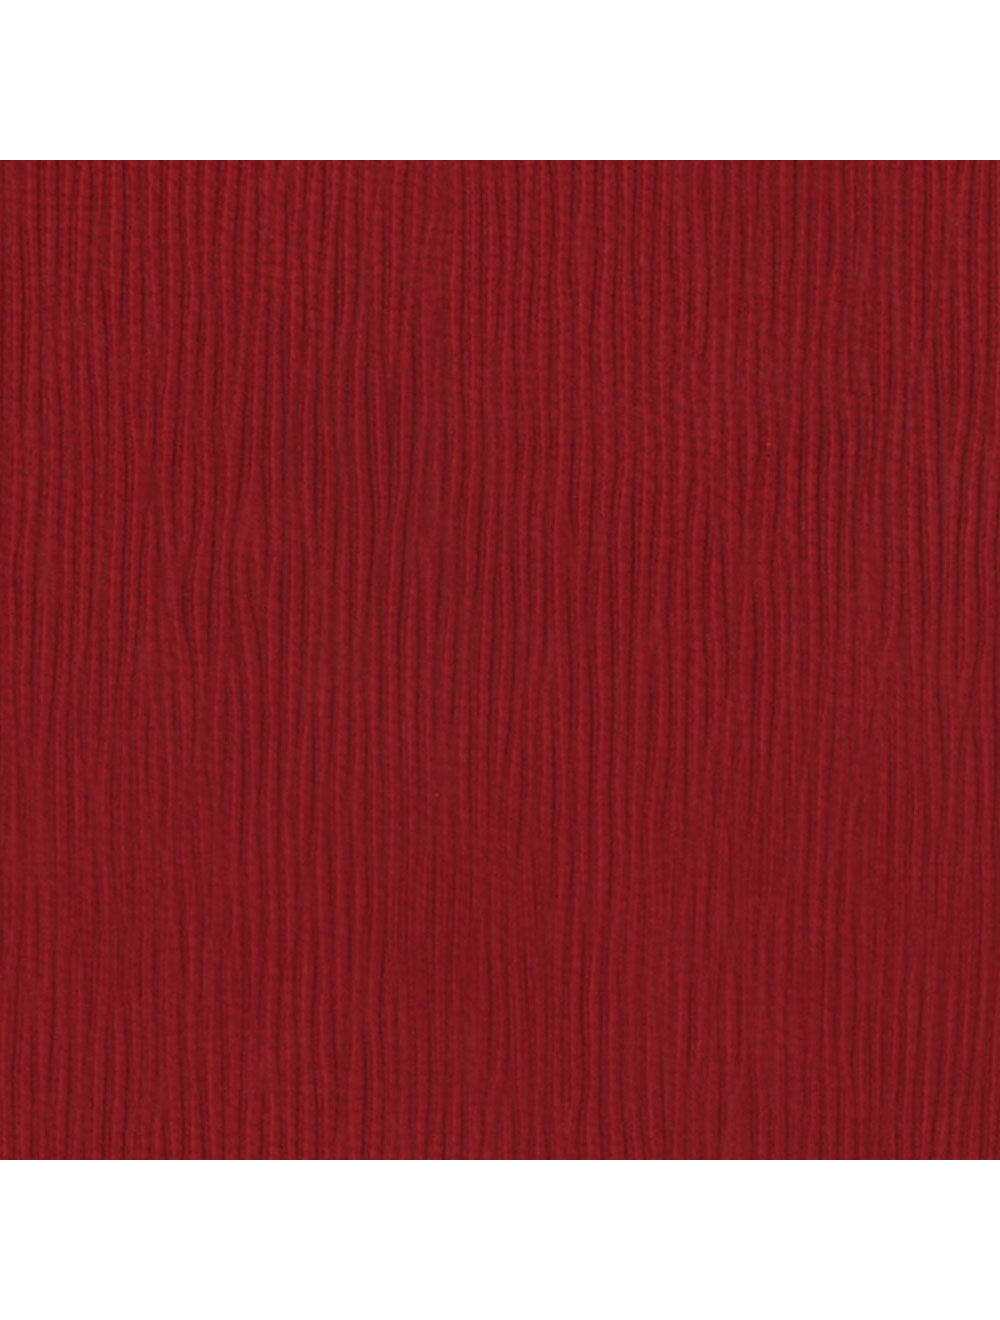 Swatch di materiale rosso di Paris Ruby